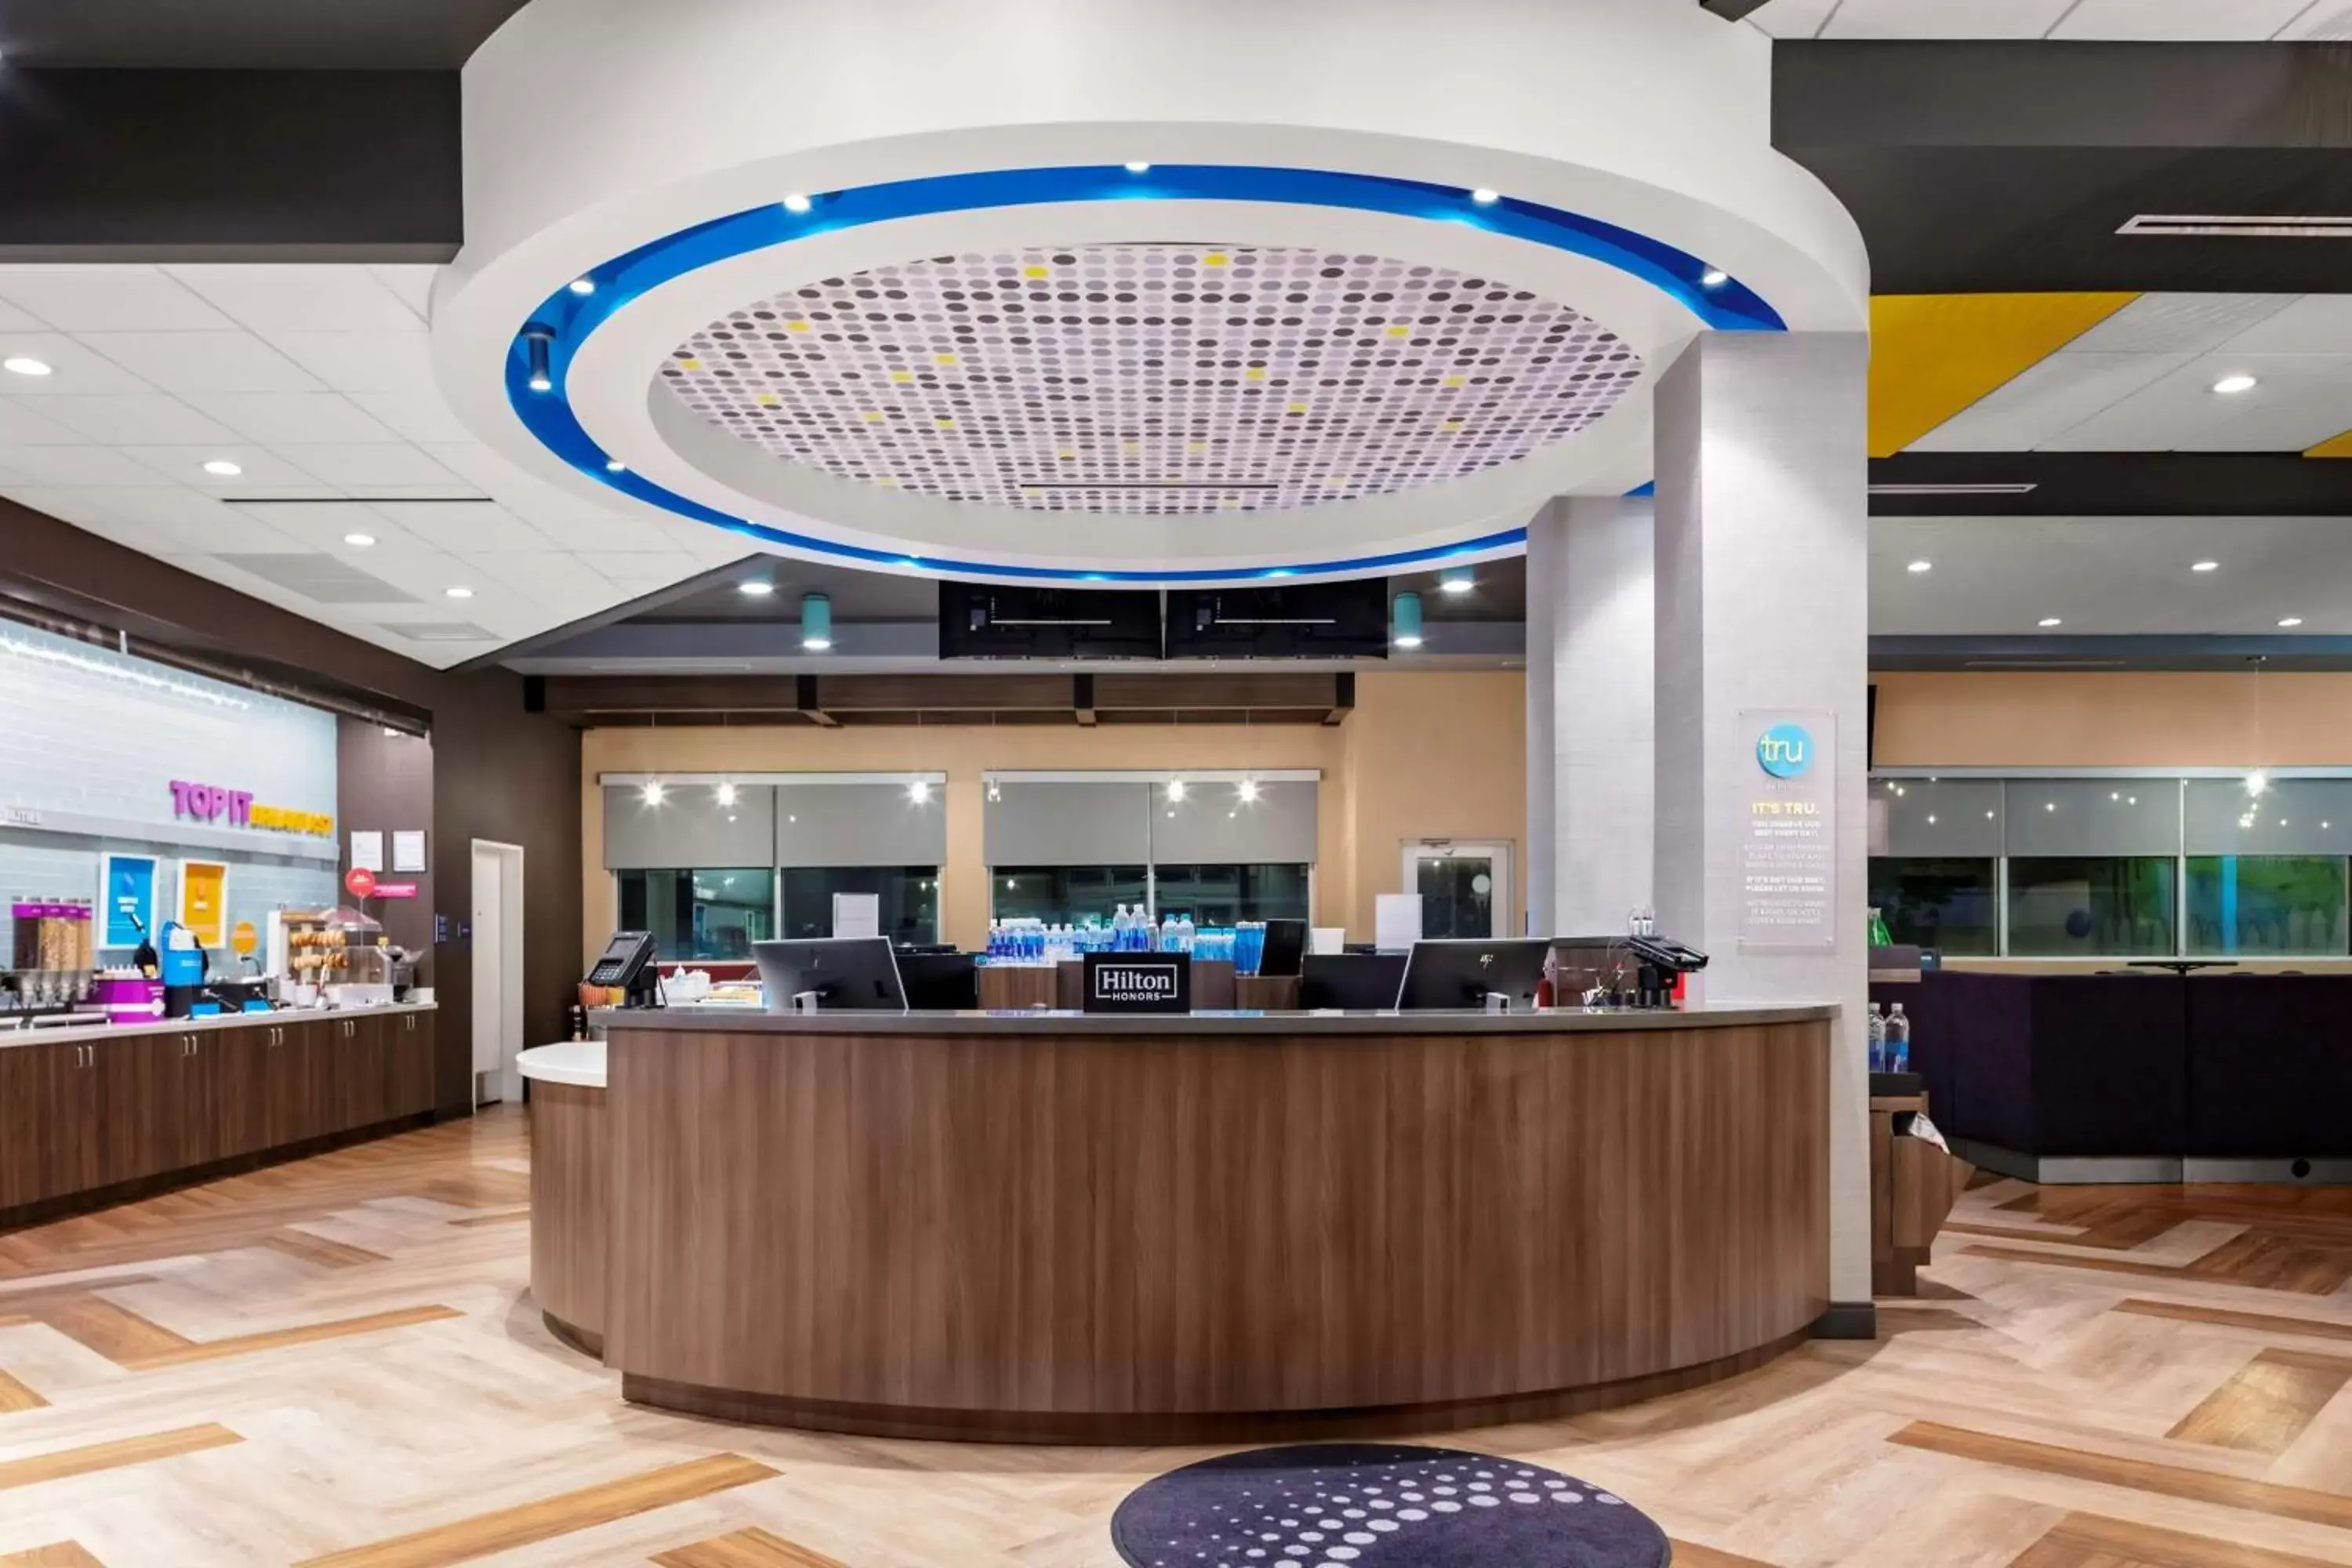 Lobby or reception in Tru By Hilton Cypress Houston TX